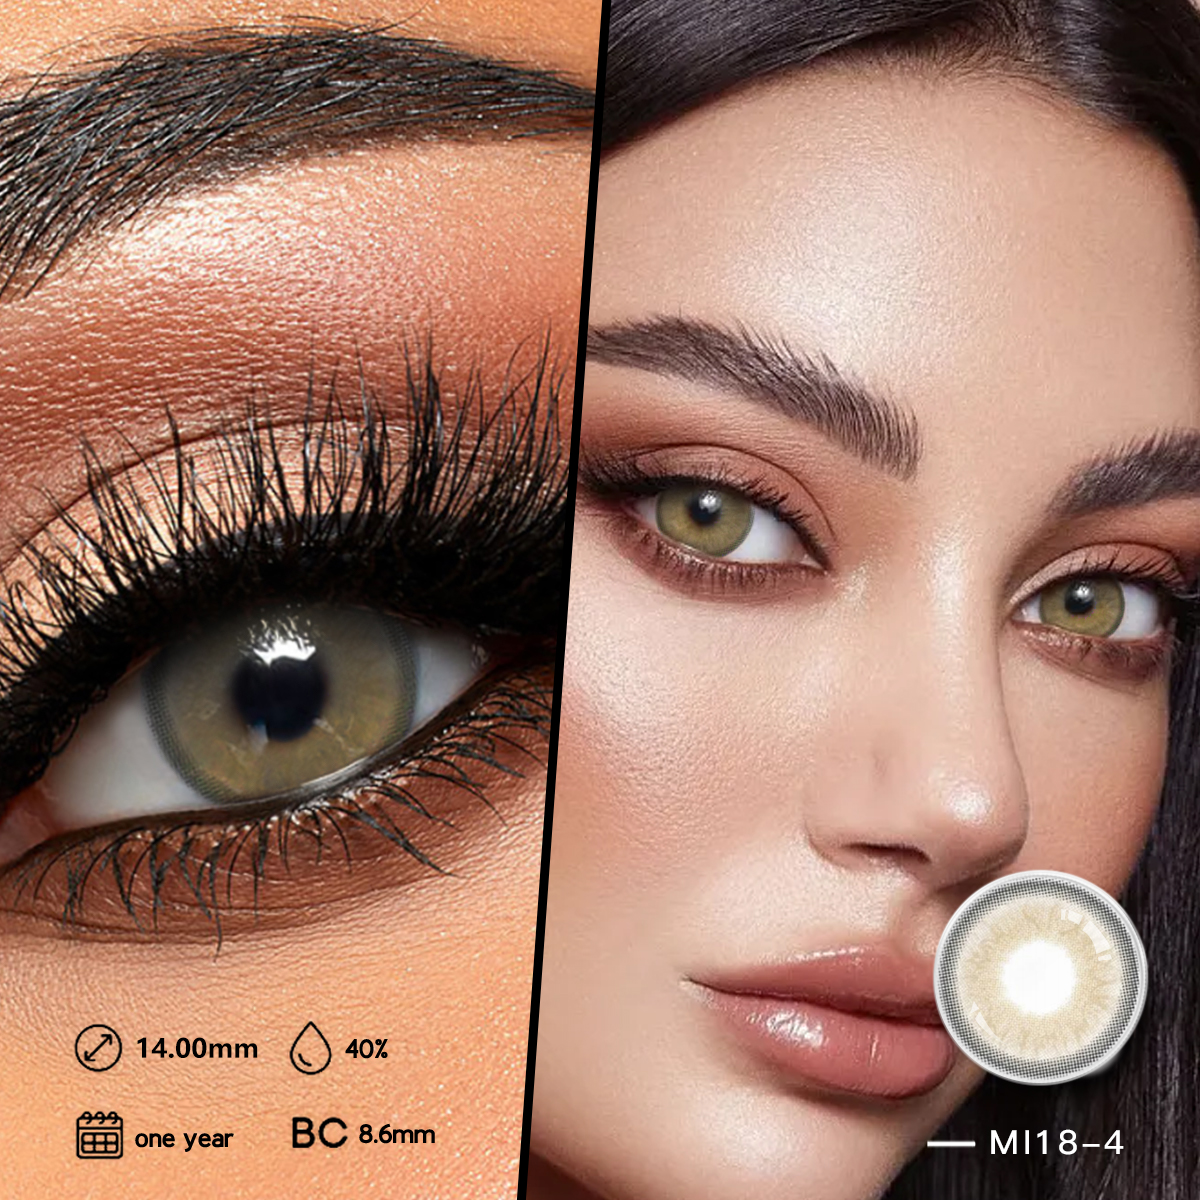 Baskı Fabrikası Sanat Kağıdı Kontakt Lensler Kutu Moda Kozmetik Renkli Göz Kontakt Lens Karton